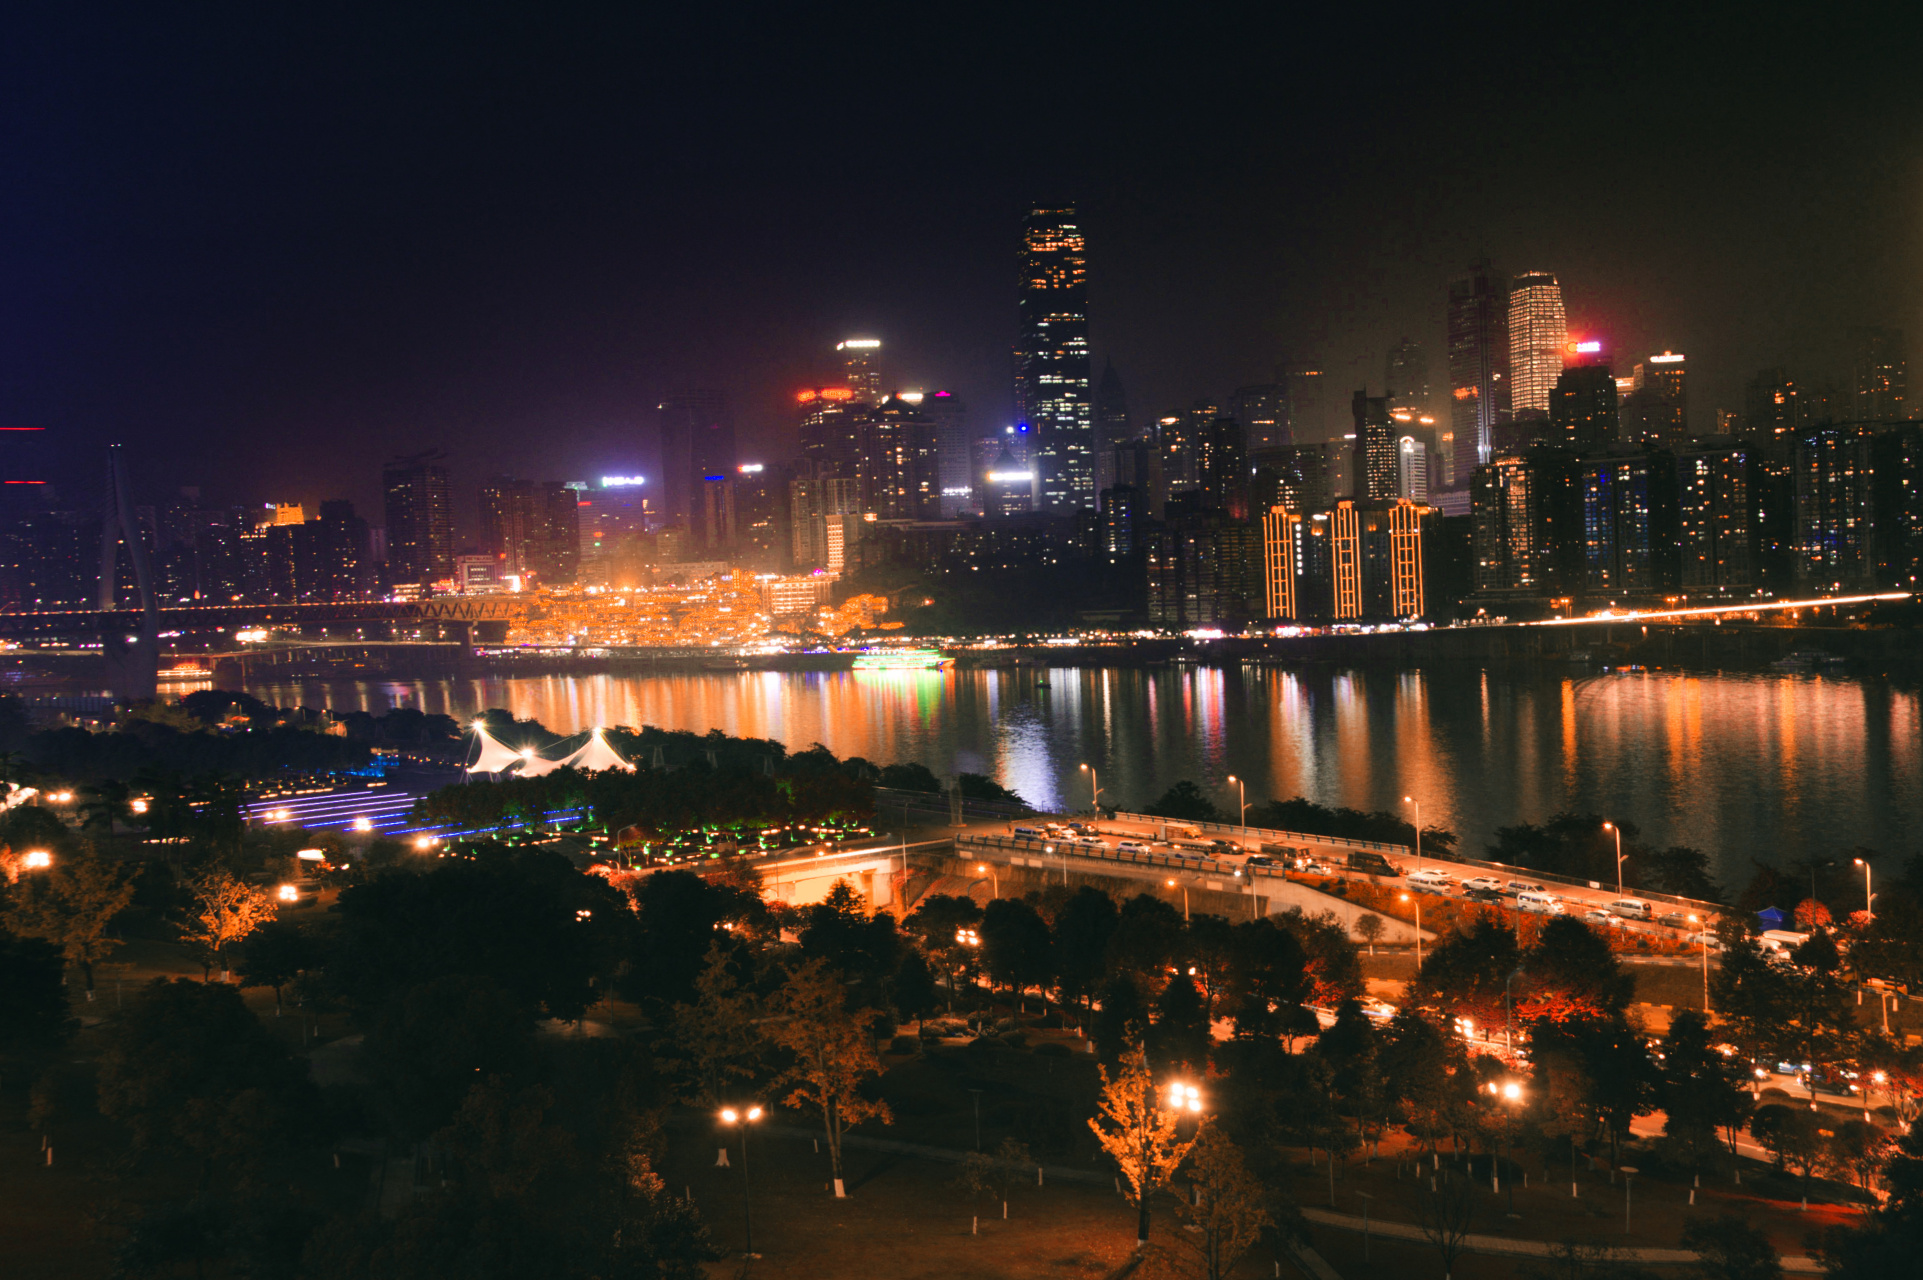 78重庆江北嘴,夜晚的城市总是让我感到无比的魅力和繁华